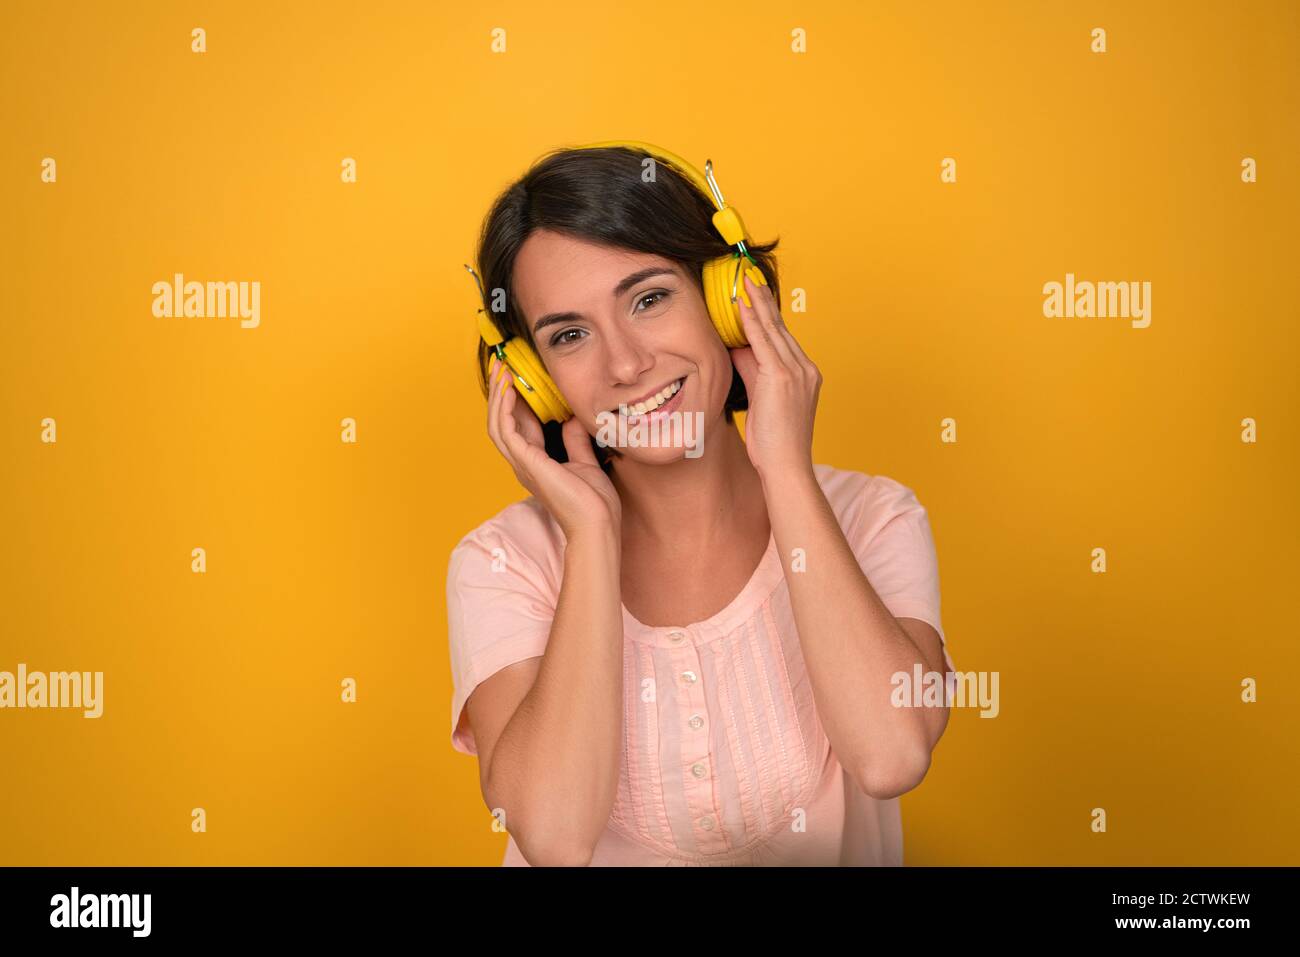 Die junge Frau drückt im Studio gelbe Kopfhörer an ihre Ohren. Brunette lächelt und hört Musik auf einem gelben Hintergrund. Hochwertige Fotos Stockfoto